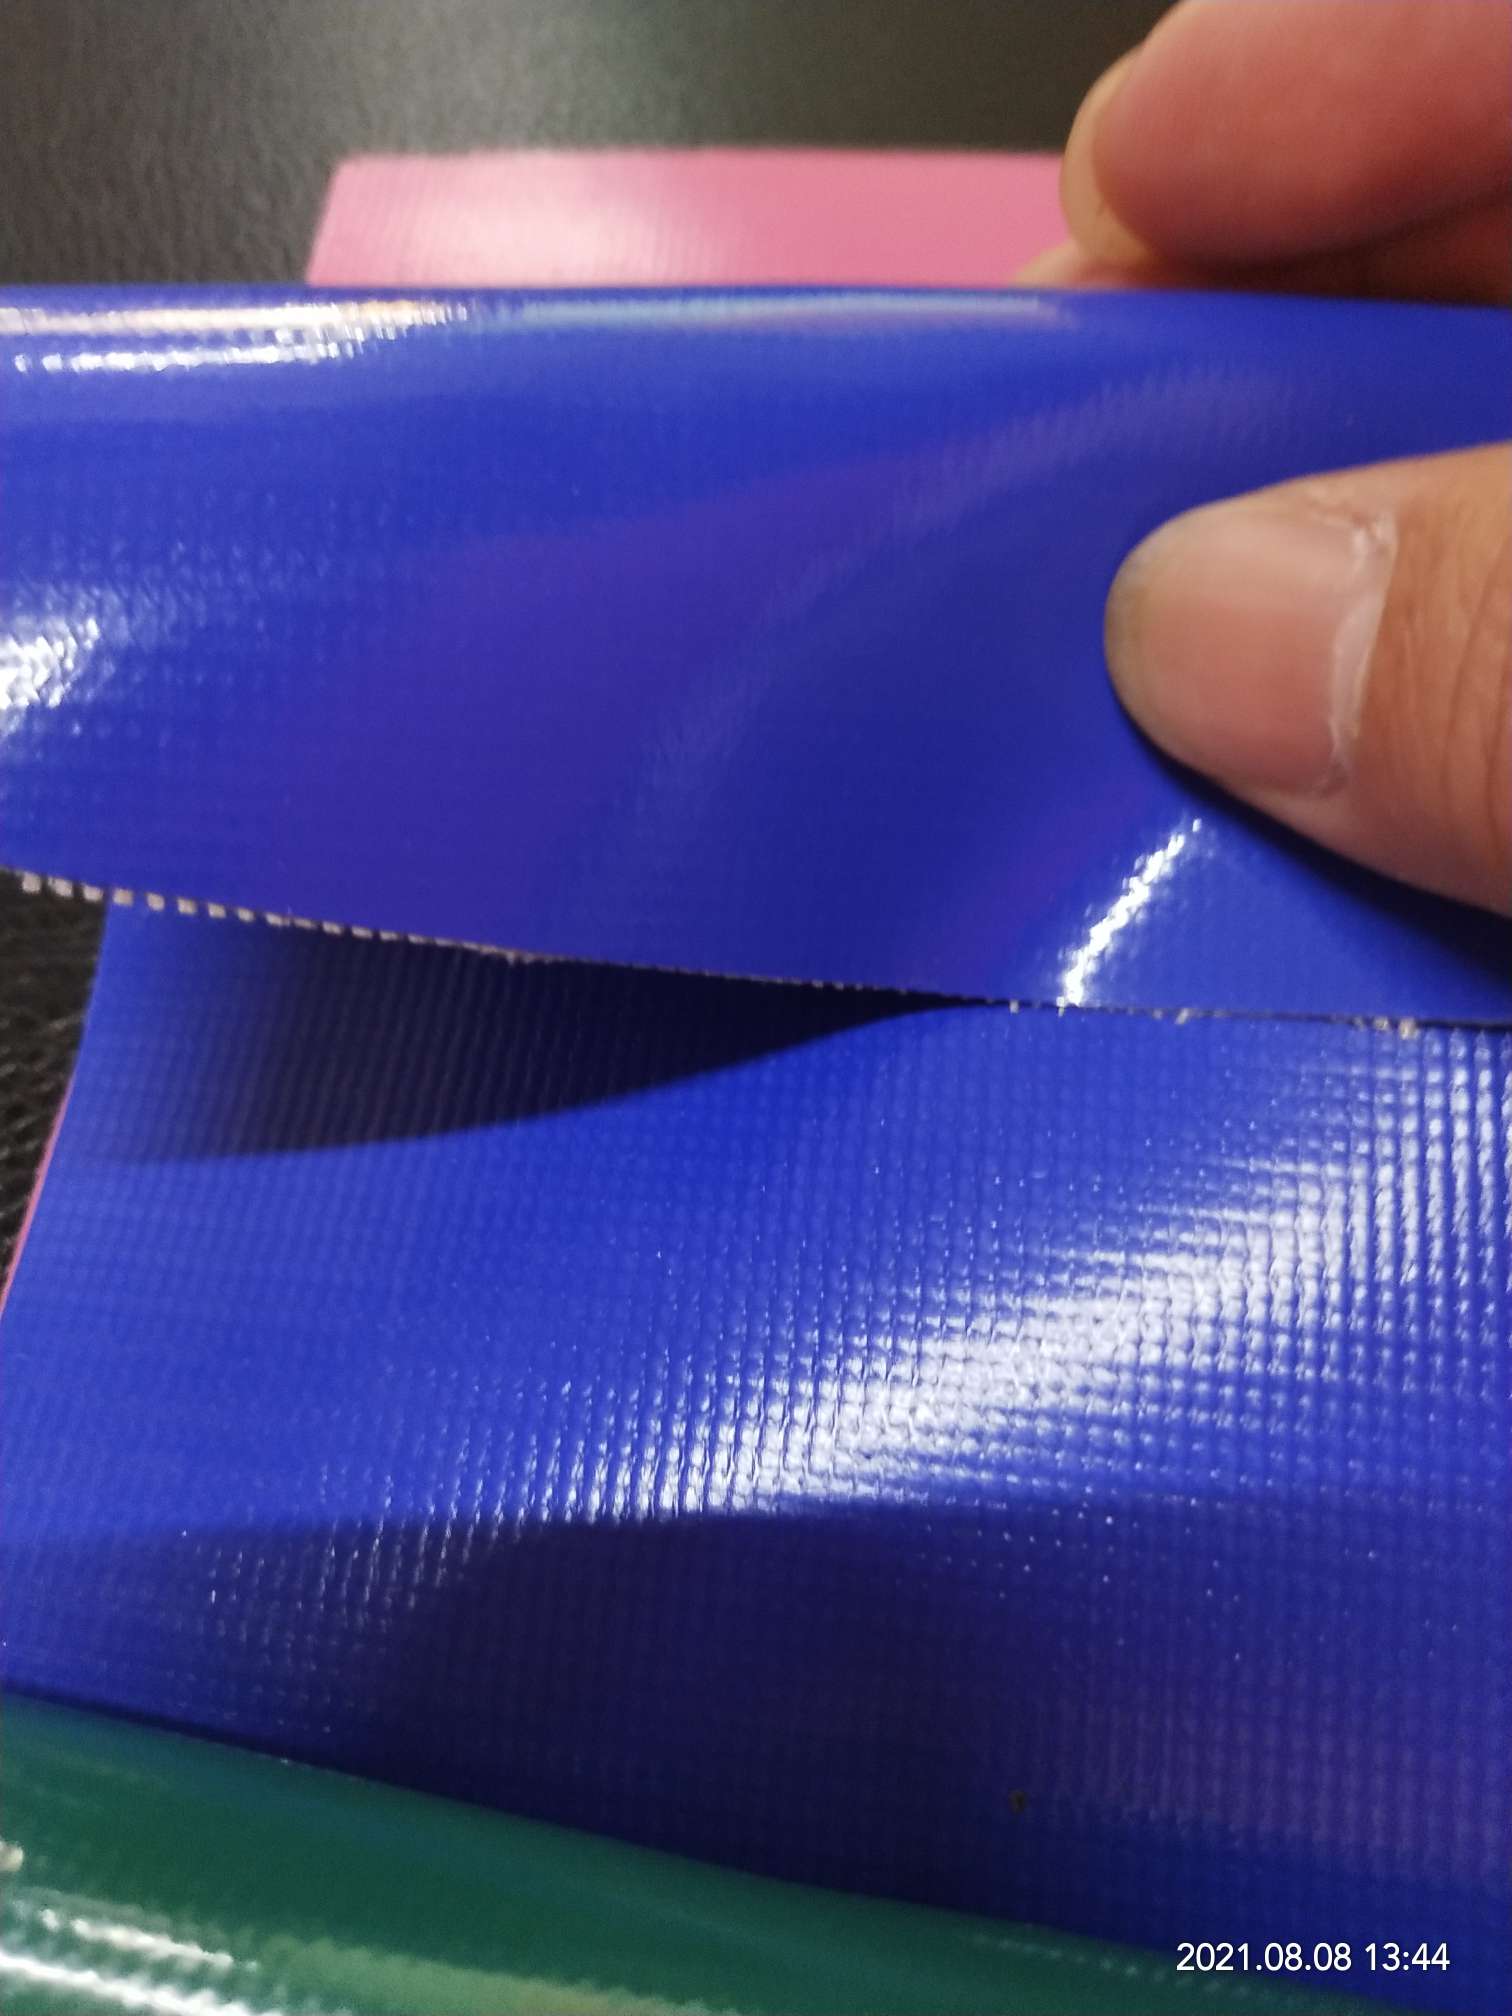 优质光面0.47mm厚深蓝色PVC夹网布  箱包布  机器罩家具罩  体育游乐产品  格种箱包袋专用面料详情图2